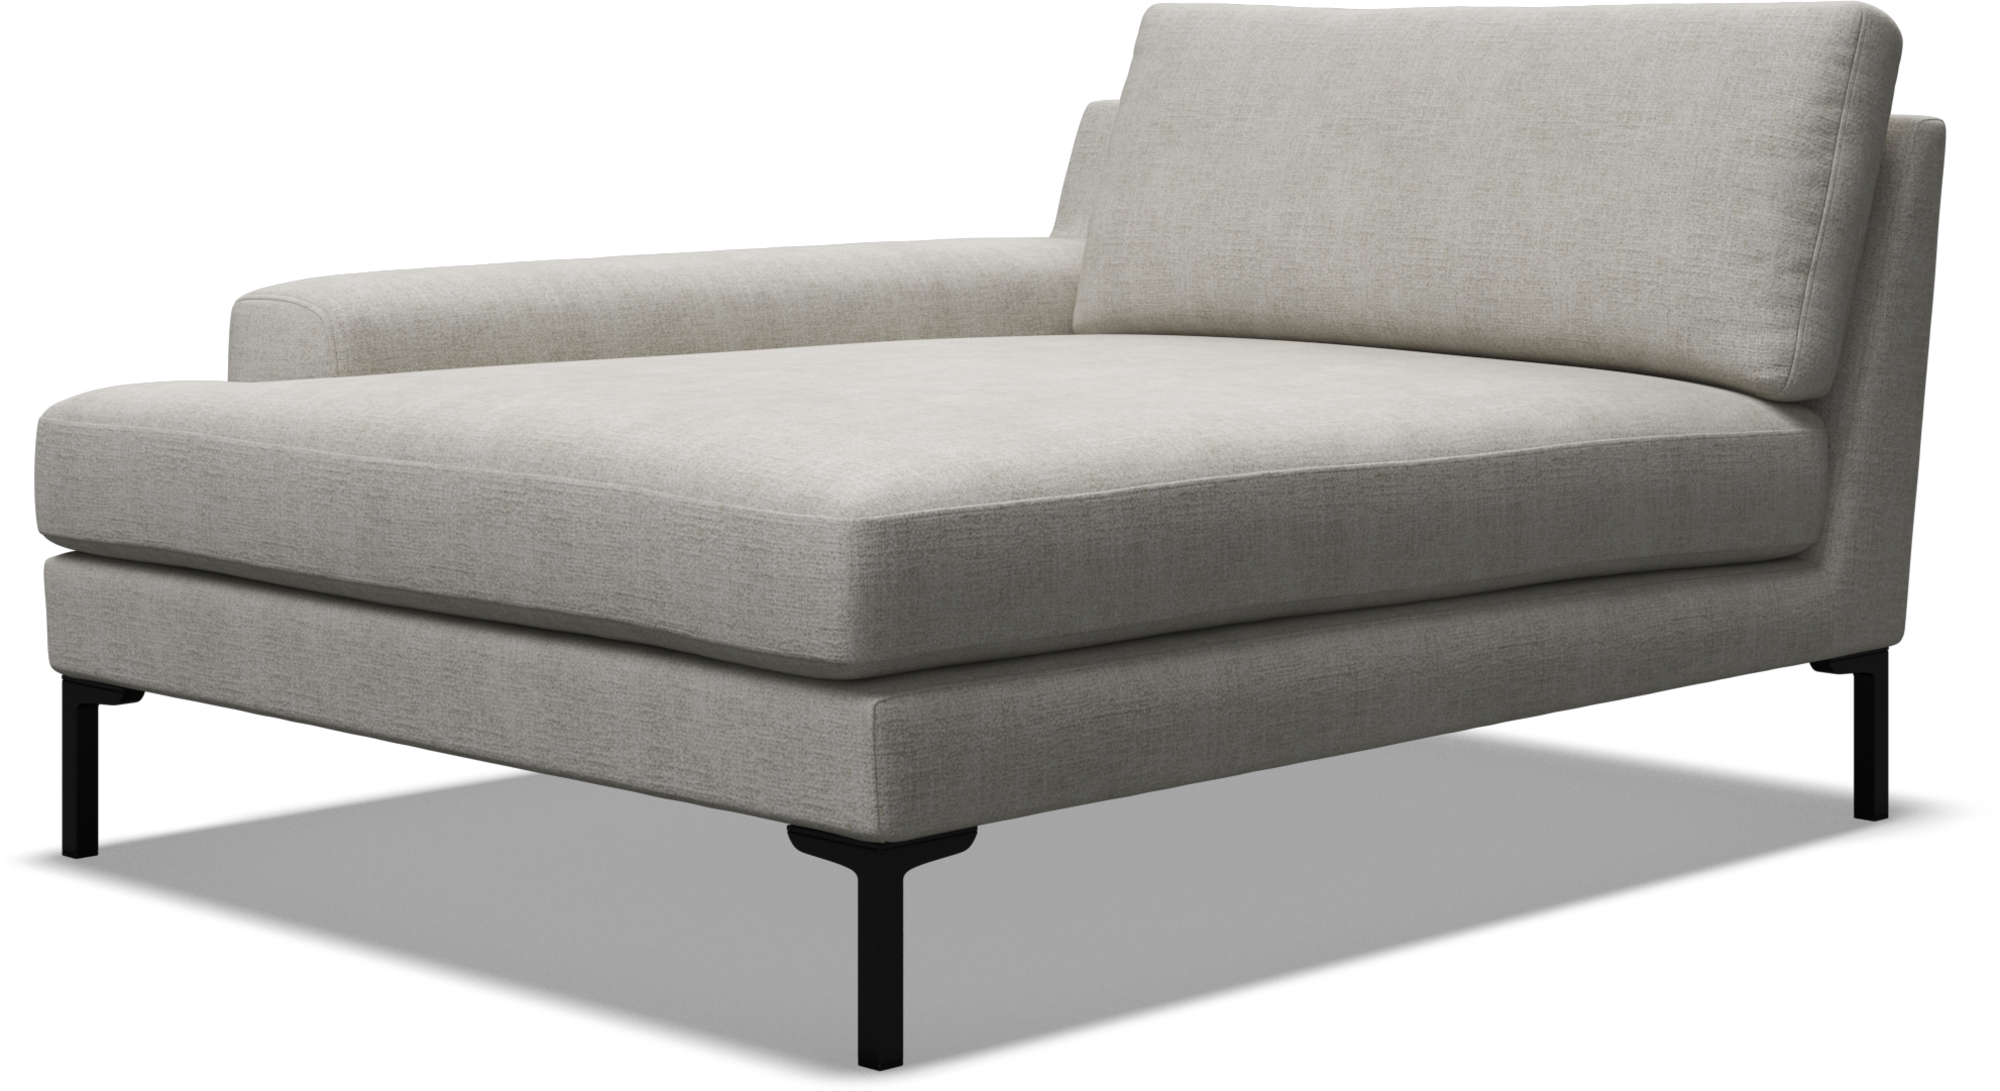 Sussex modular sofa